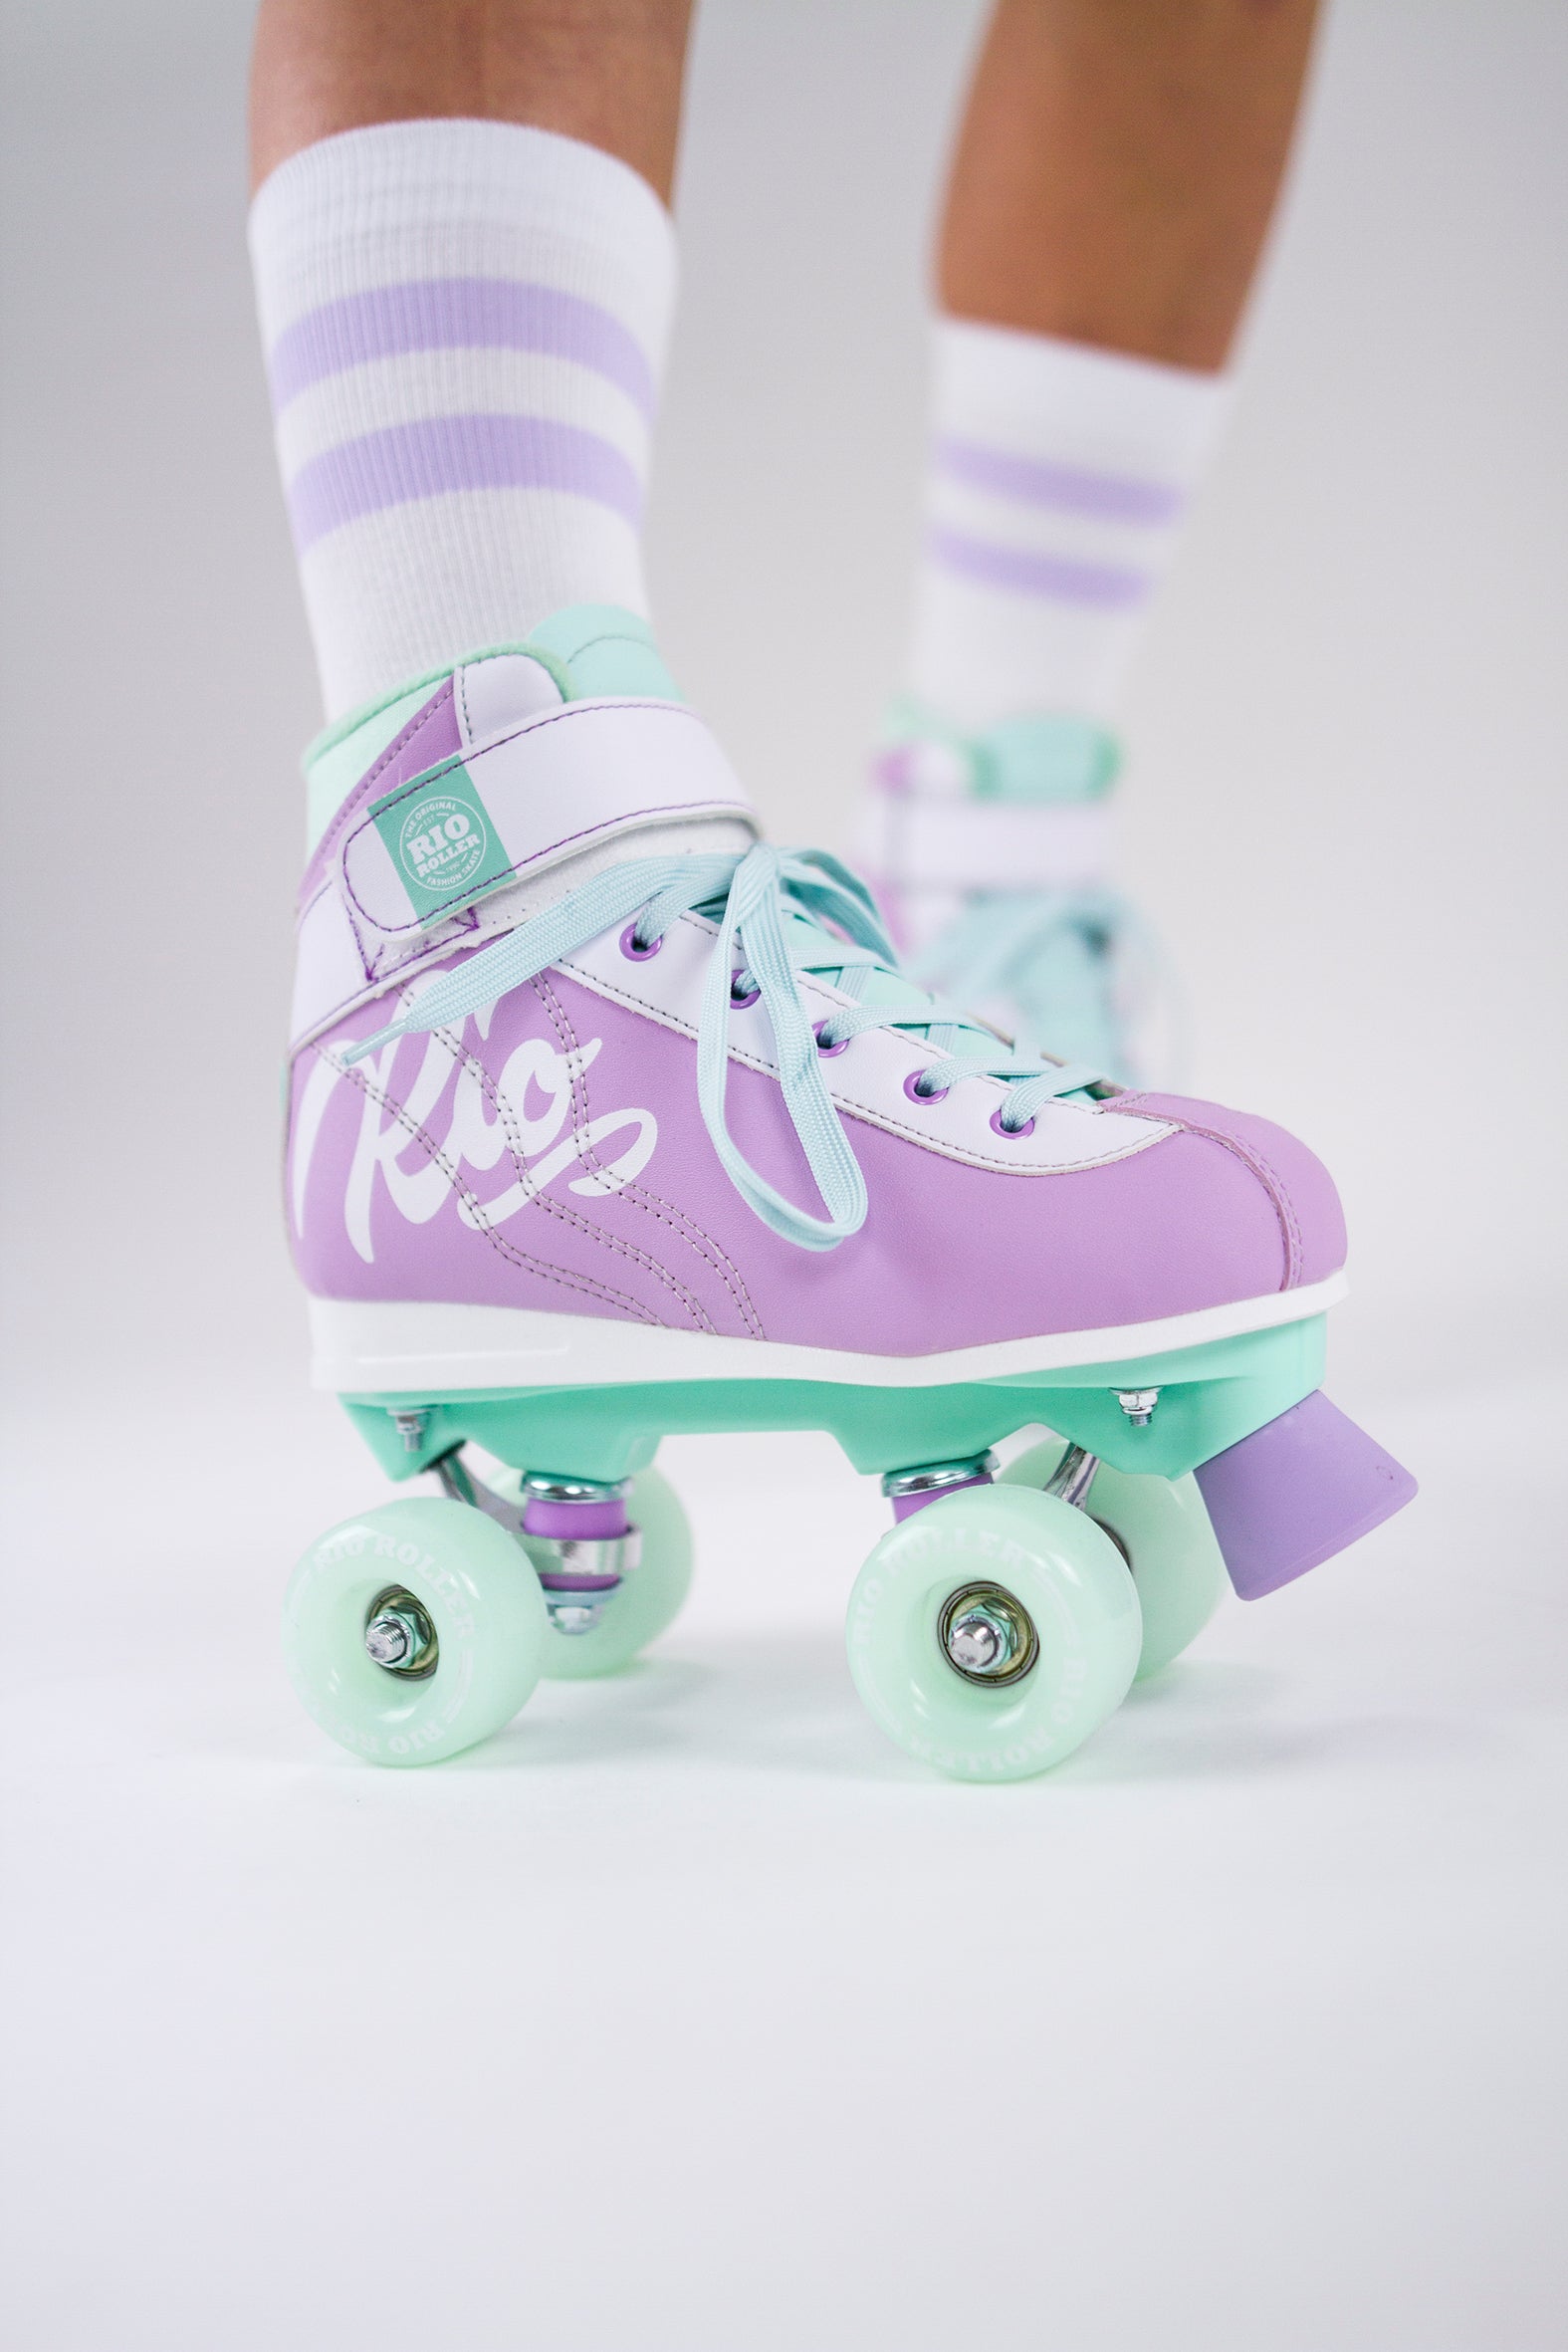 Rio Roller Milkshake Quad Roller Skates - Mint Berry - Momma Trucker Skates